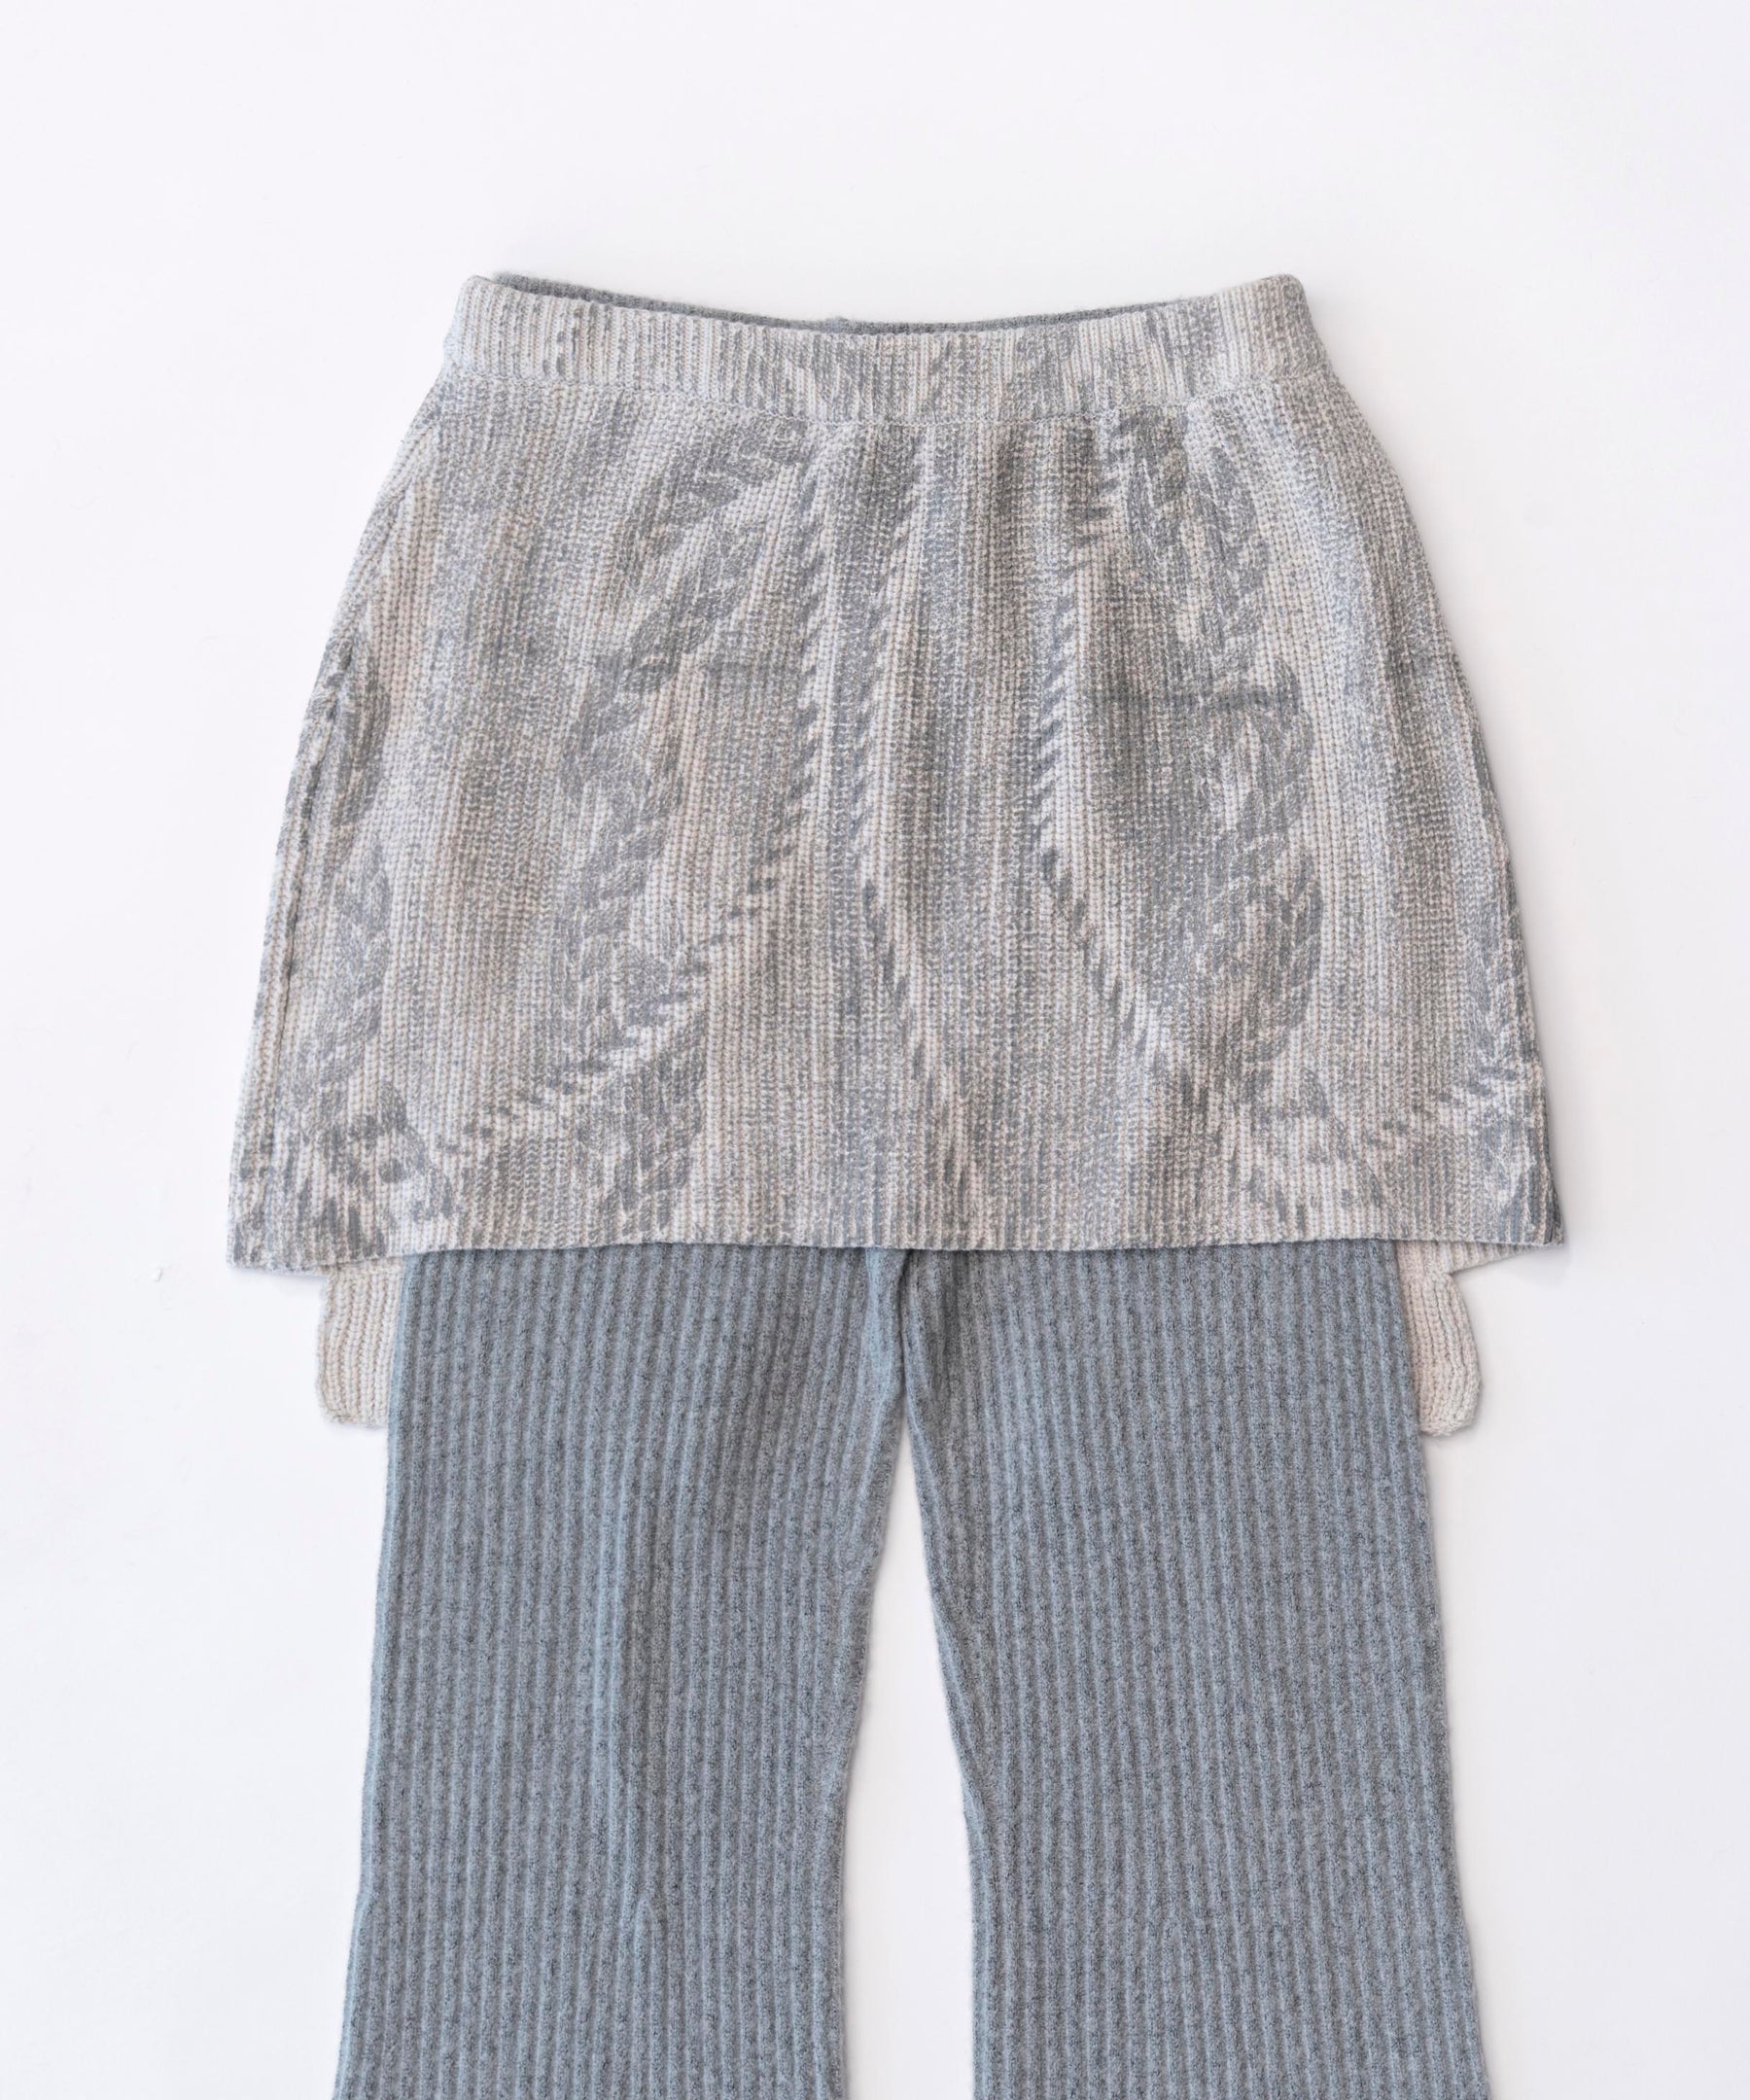 SALE】Skirt Layered Knit Pants